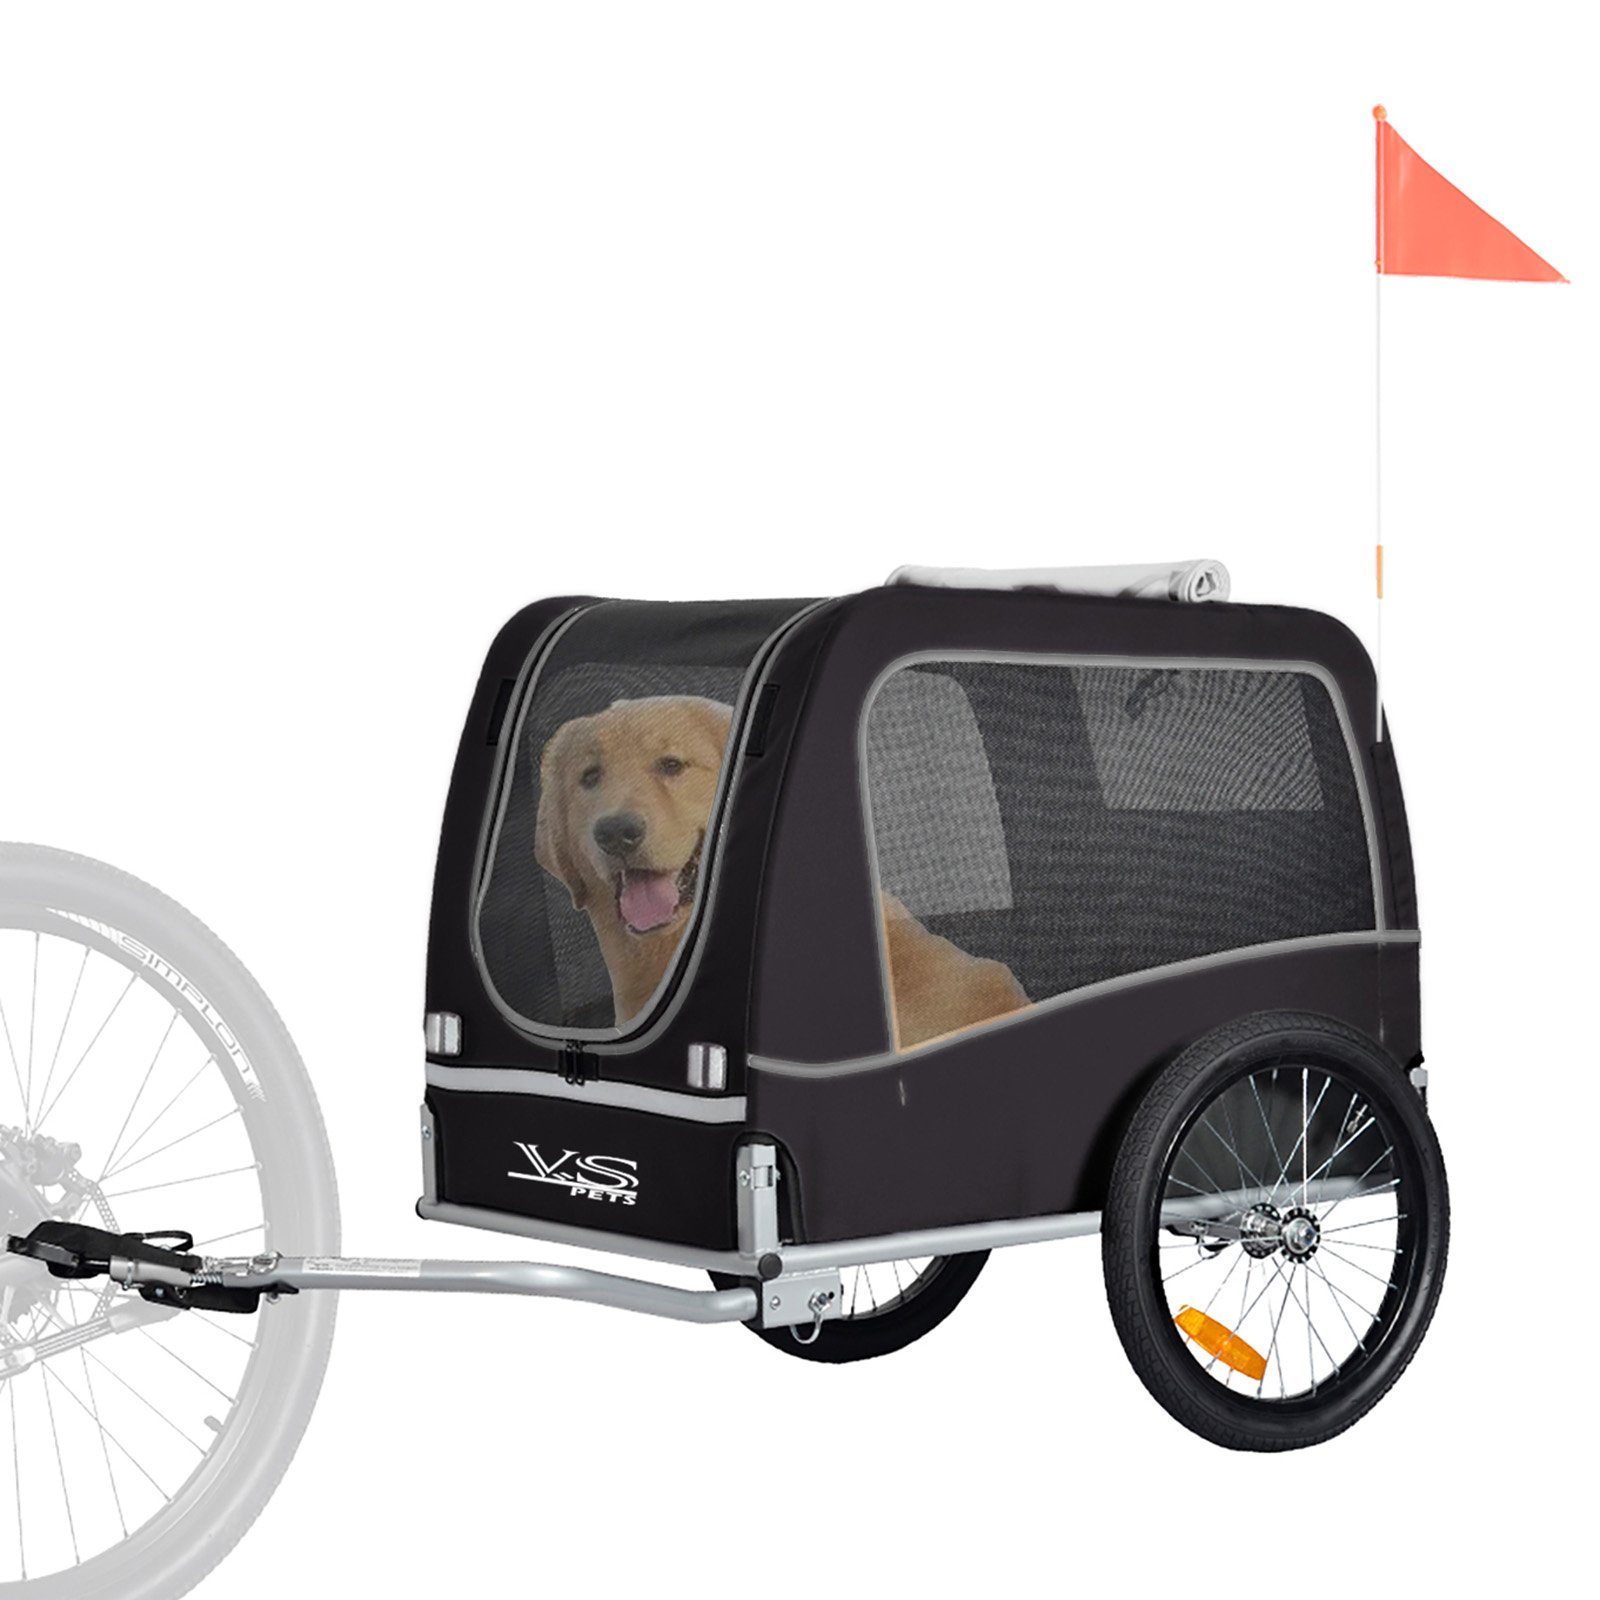 TIGGO Fahrradhundeanhänger Tiggo VS Classical Hundeanhänger Fahrradanhänger für Hunde bis 30 kg, Geeignet für einen Hund bis 30 kg oder mehrere kleine Hunde.